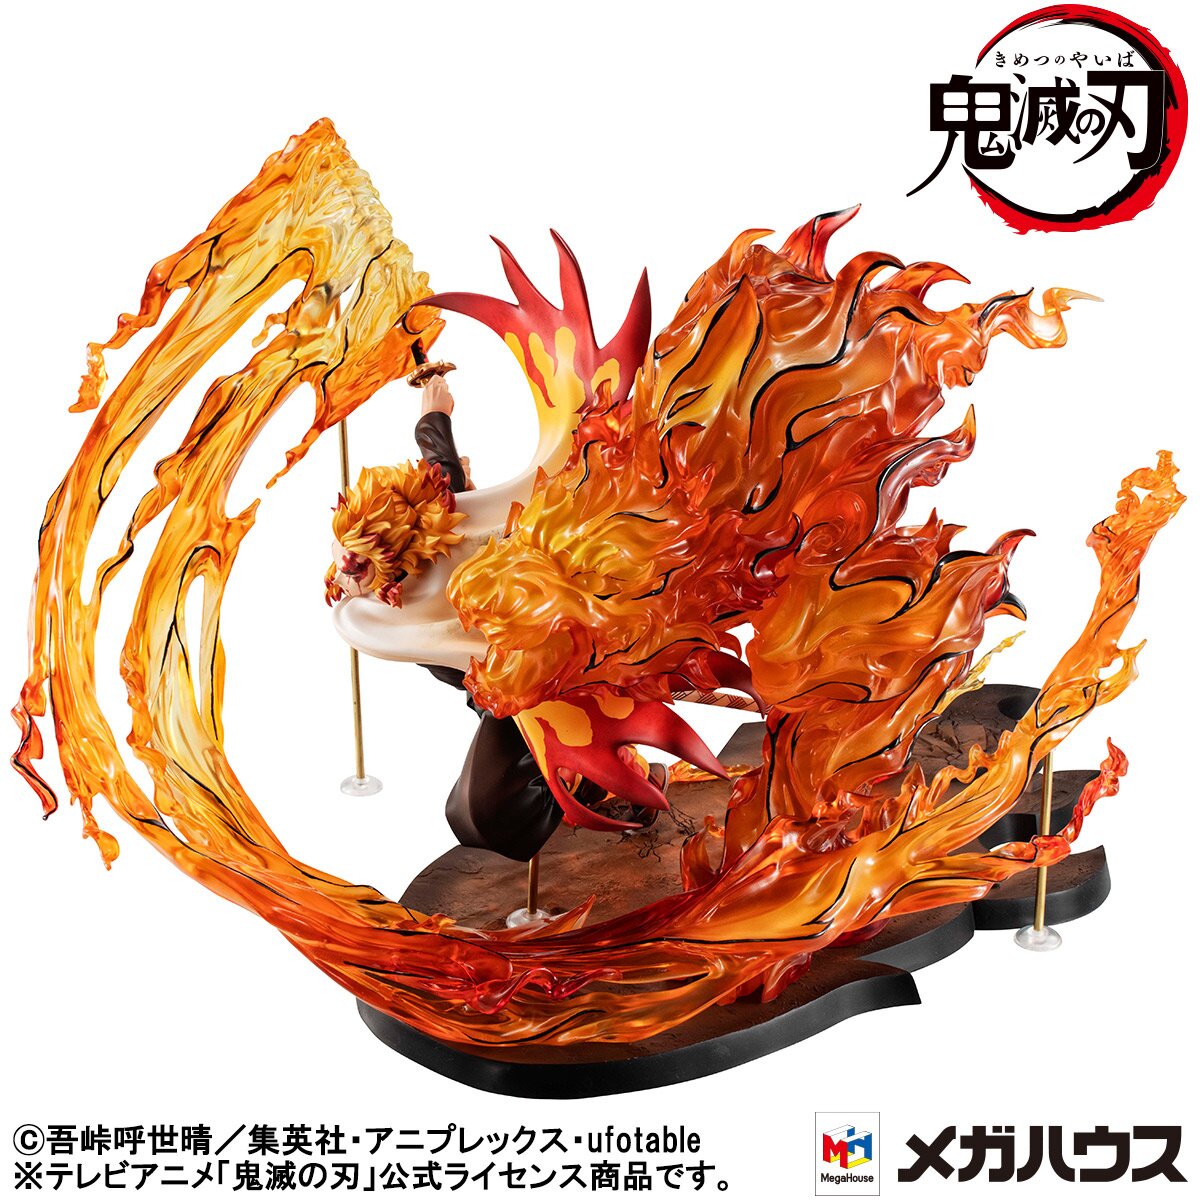 Flaming Tiger (Justice) é um personagem baseado em Rengoku do